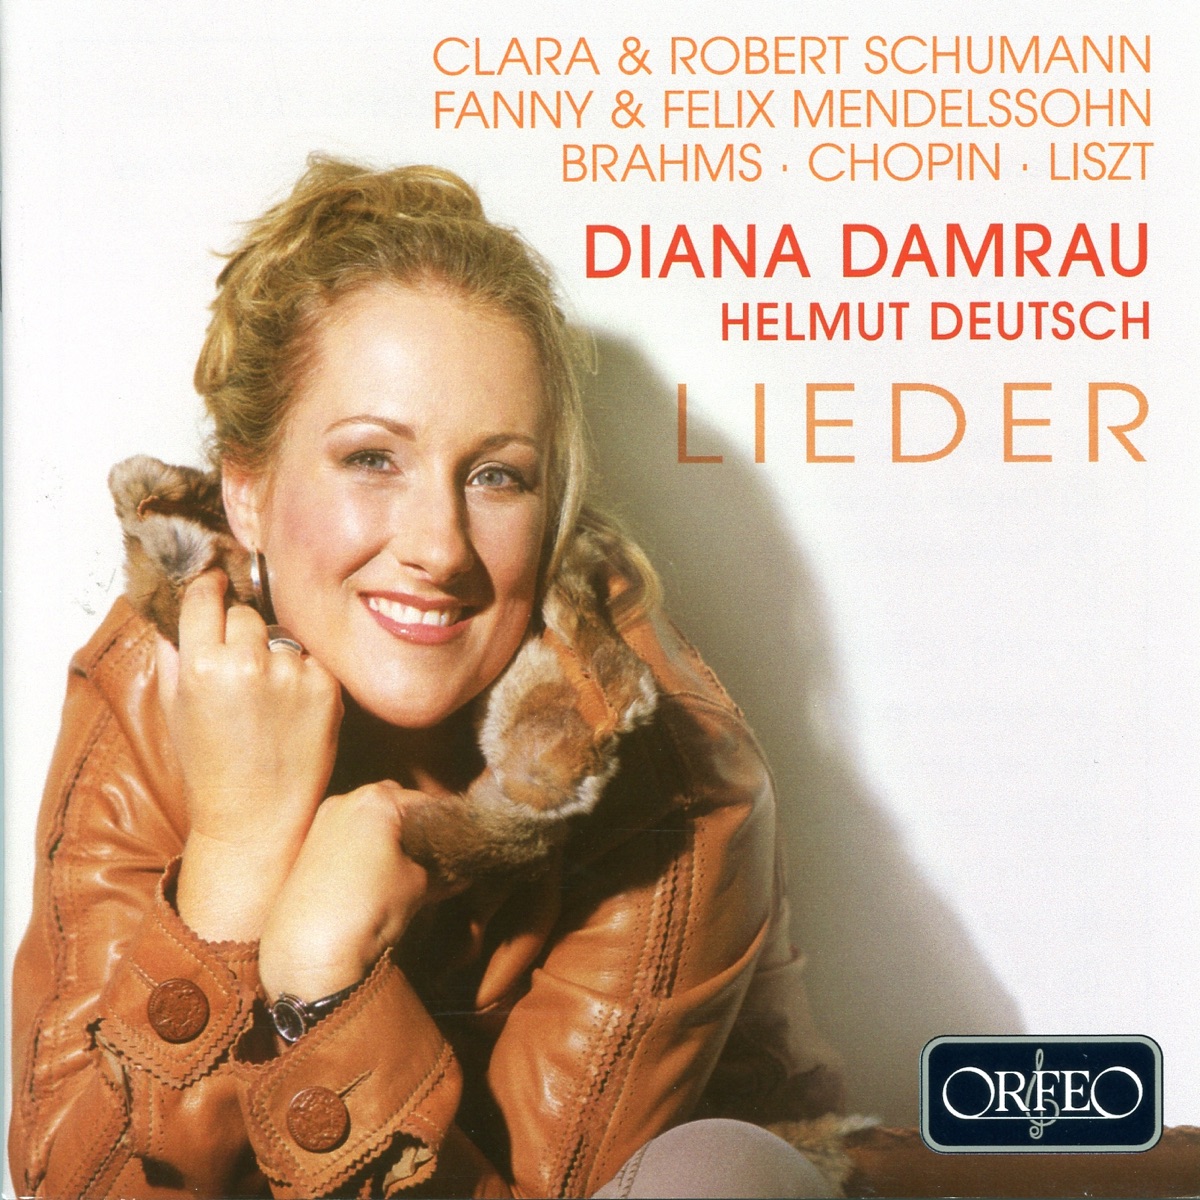 Lieder - Album by Diana Damrau & Helmut Deutsch - Apple Music